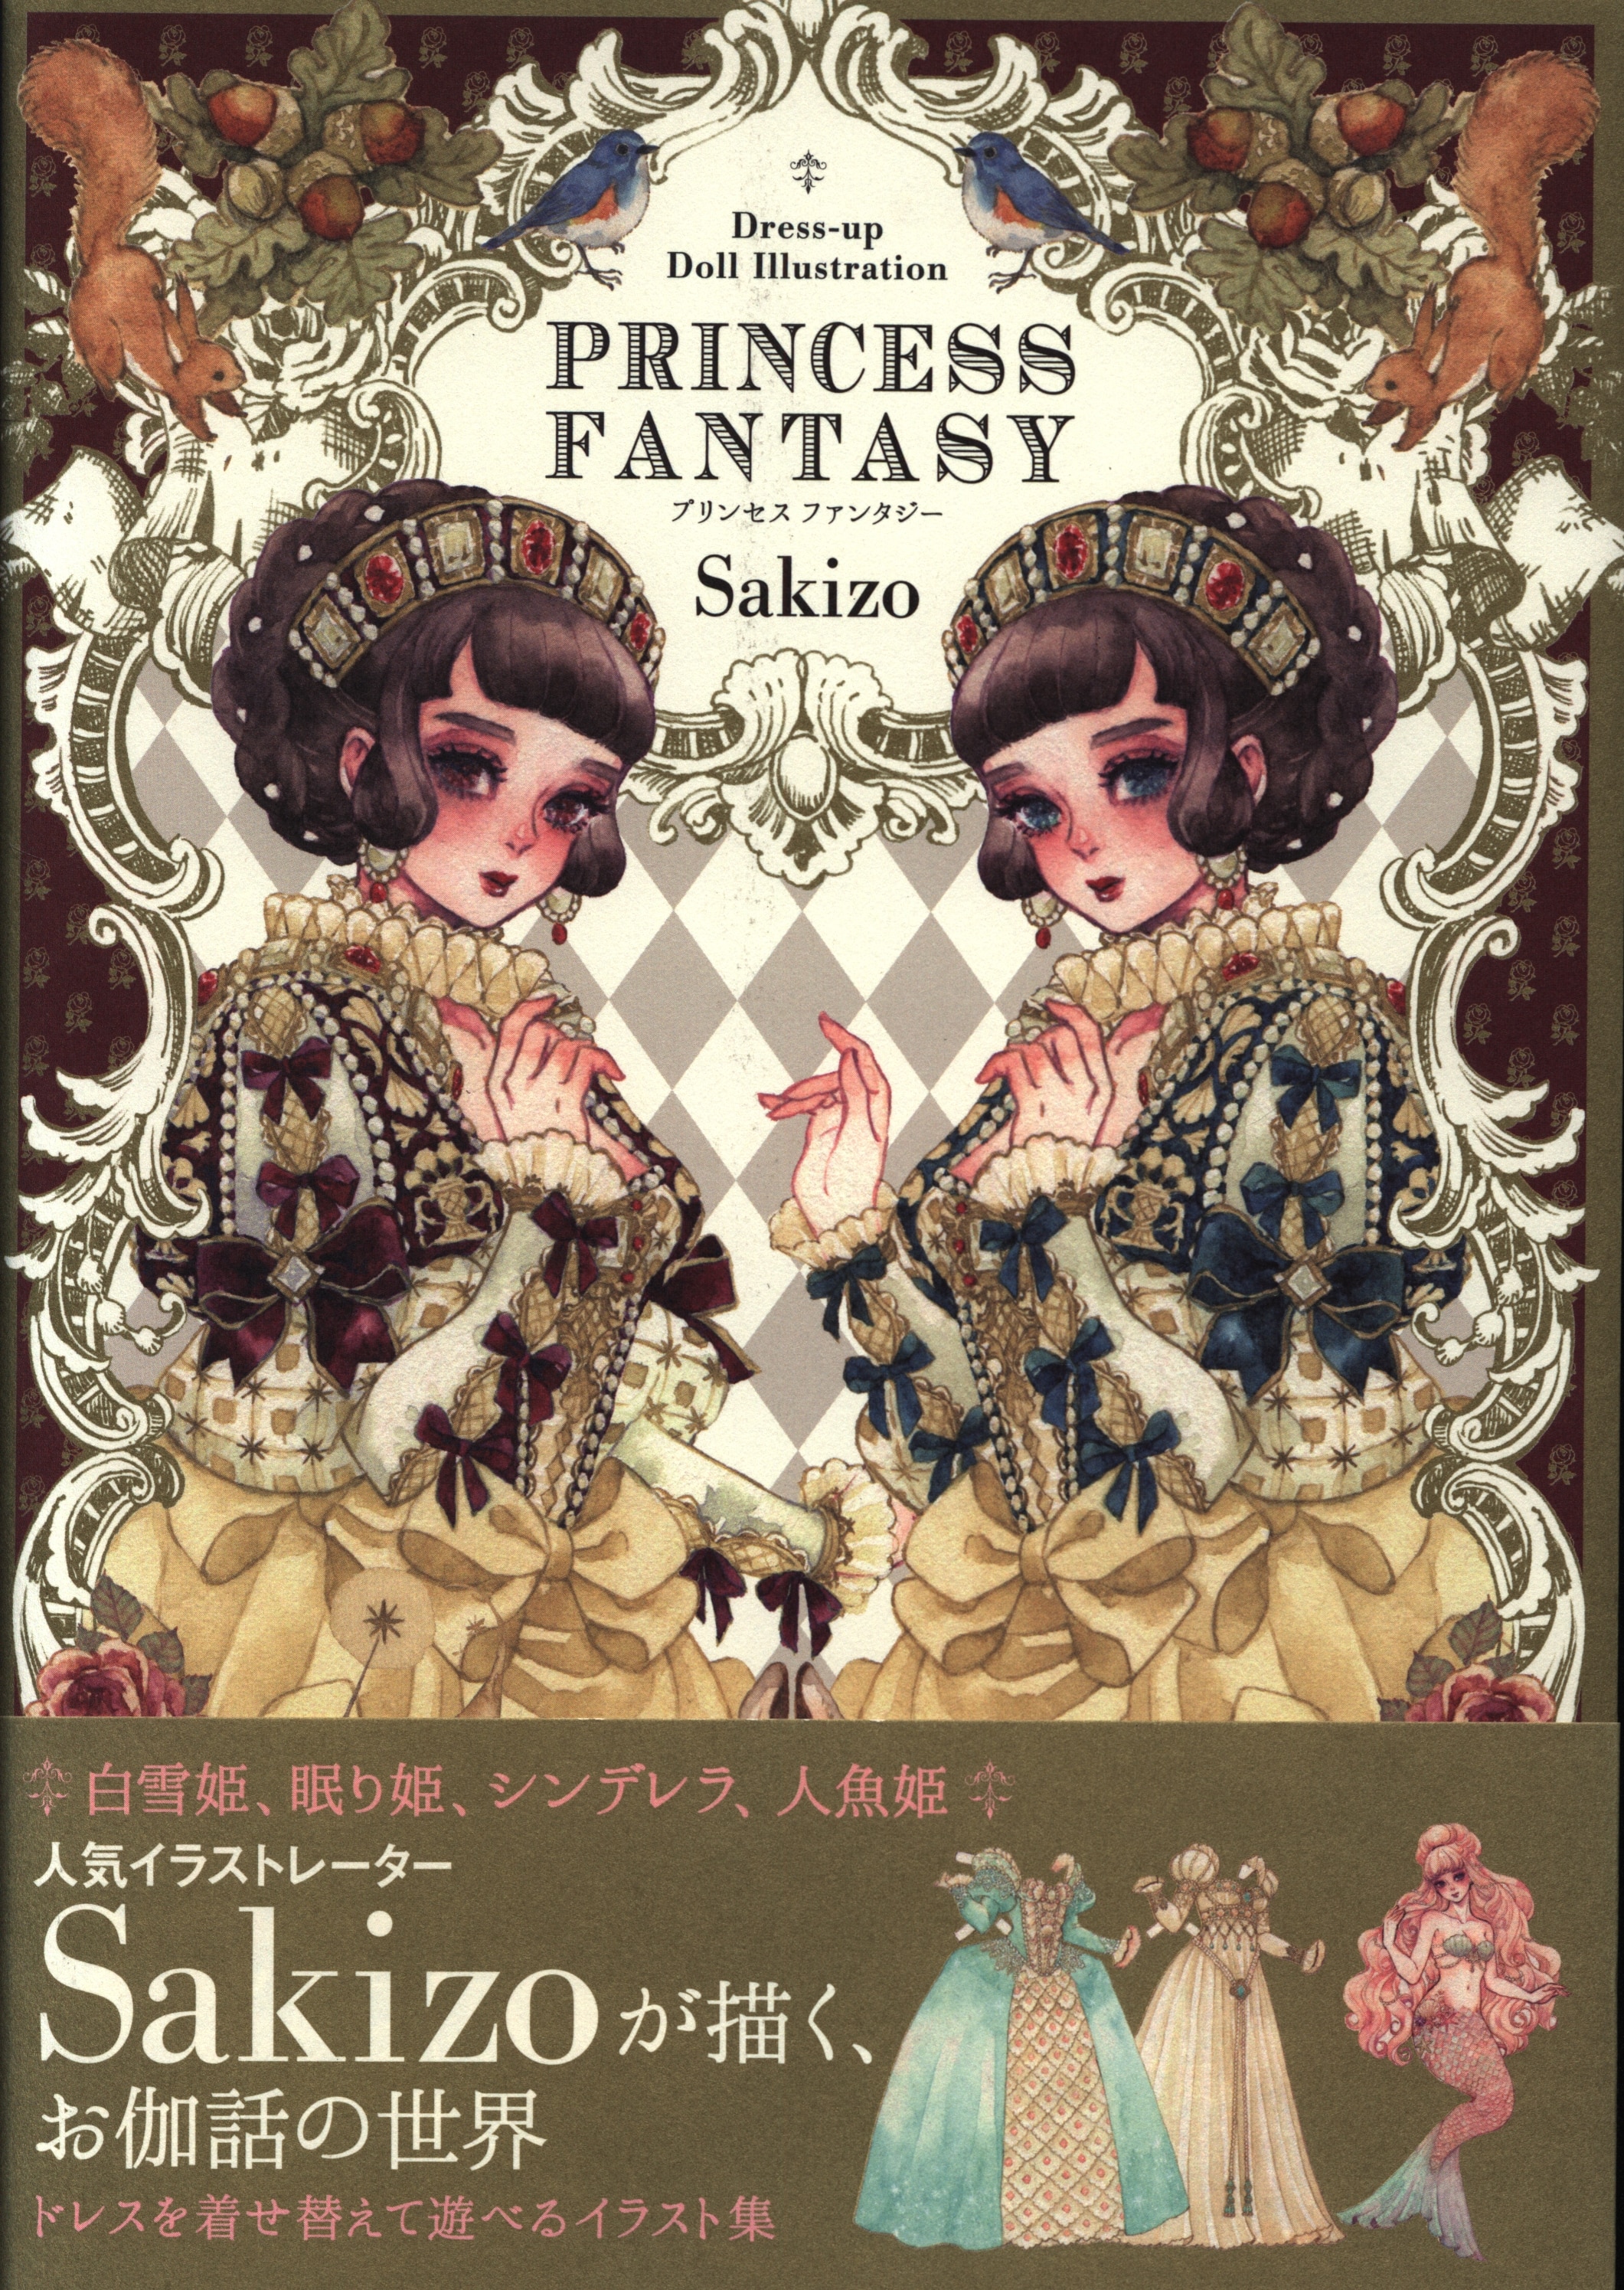 翔泳社 Sakizo Dress Up Doll Illustration Princess Fantasy 帯付 まんだらけ Mandarake